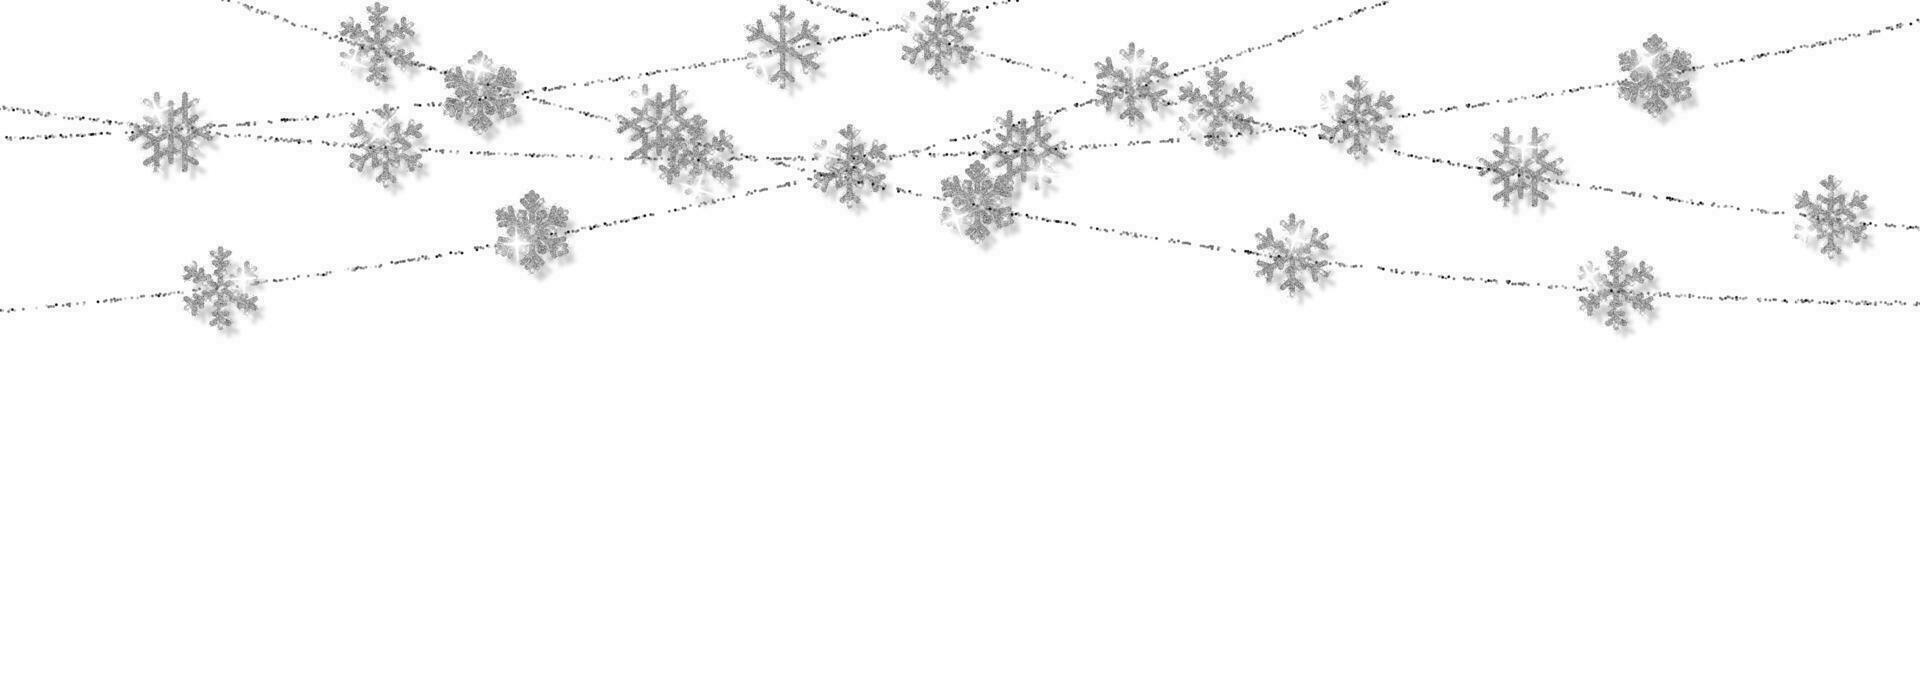 jul eller ny år silver- snöflinga dekoration krans på vit bakgrund. hängande glitter snöflinga. vektor illustration